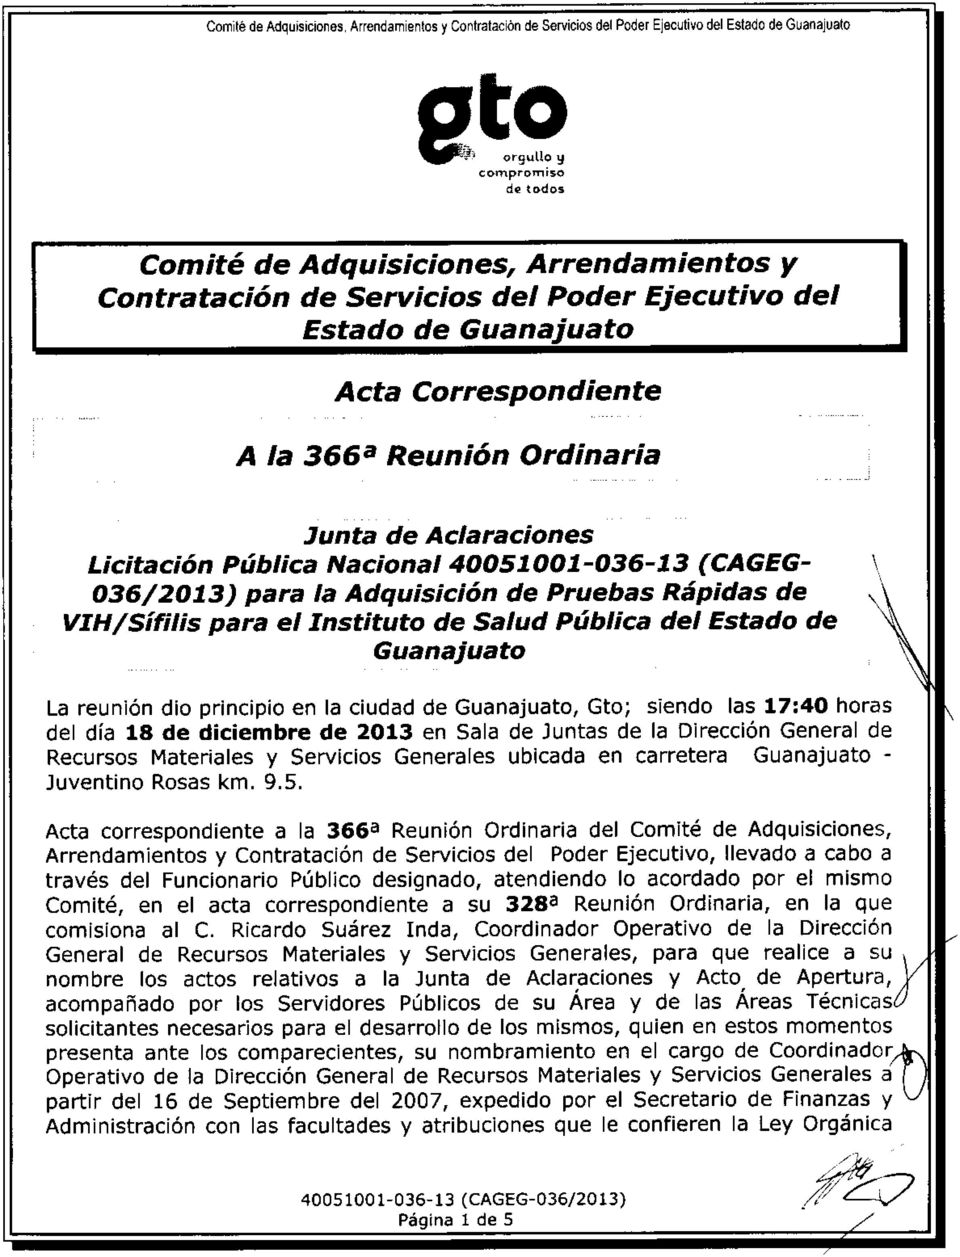 (CAGEG- 036/2013) para la Adquisici6n de Pruebas Rdpidas de vlh/sifilis para el Instituto de Salud Piblica del Estado de Guanaiuato La reunl6n dio principio en la ciudad de Guanajuato, Gto; siendo